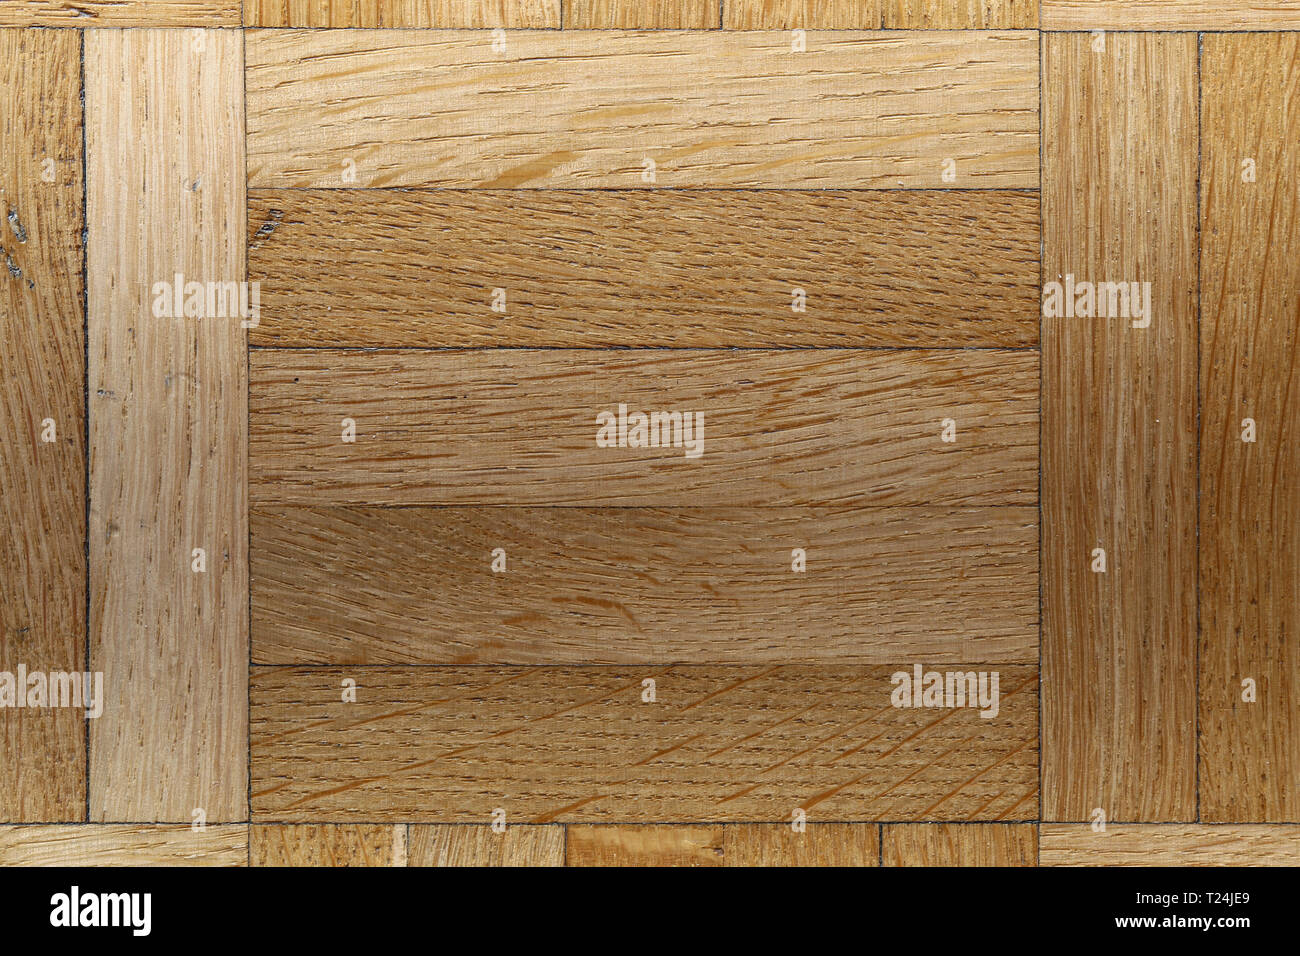 Closeup texture di un marrone con pavimento in legno. Dettagli della bella e vivace fino a colori di terra. N. persone. Immagine a colori con obiettivo macro. Foto Stock